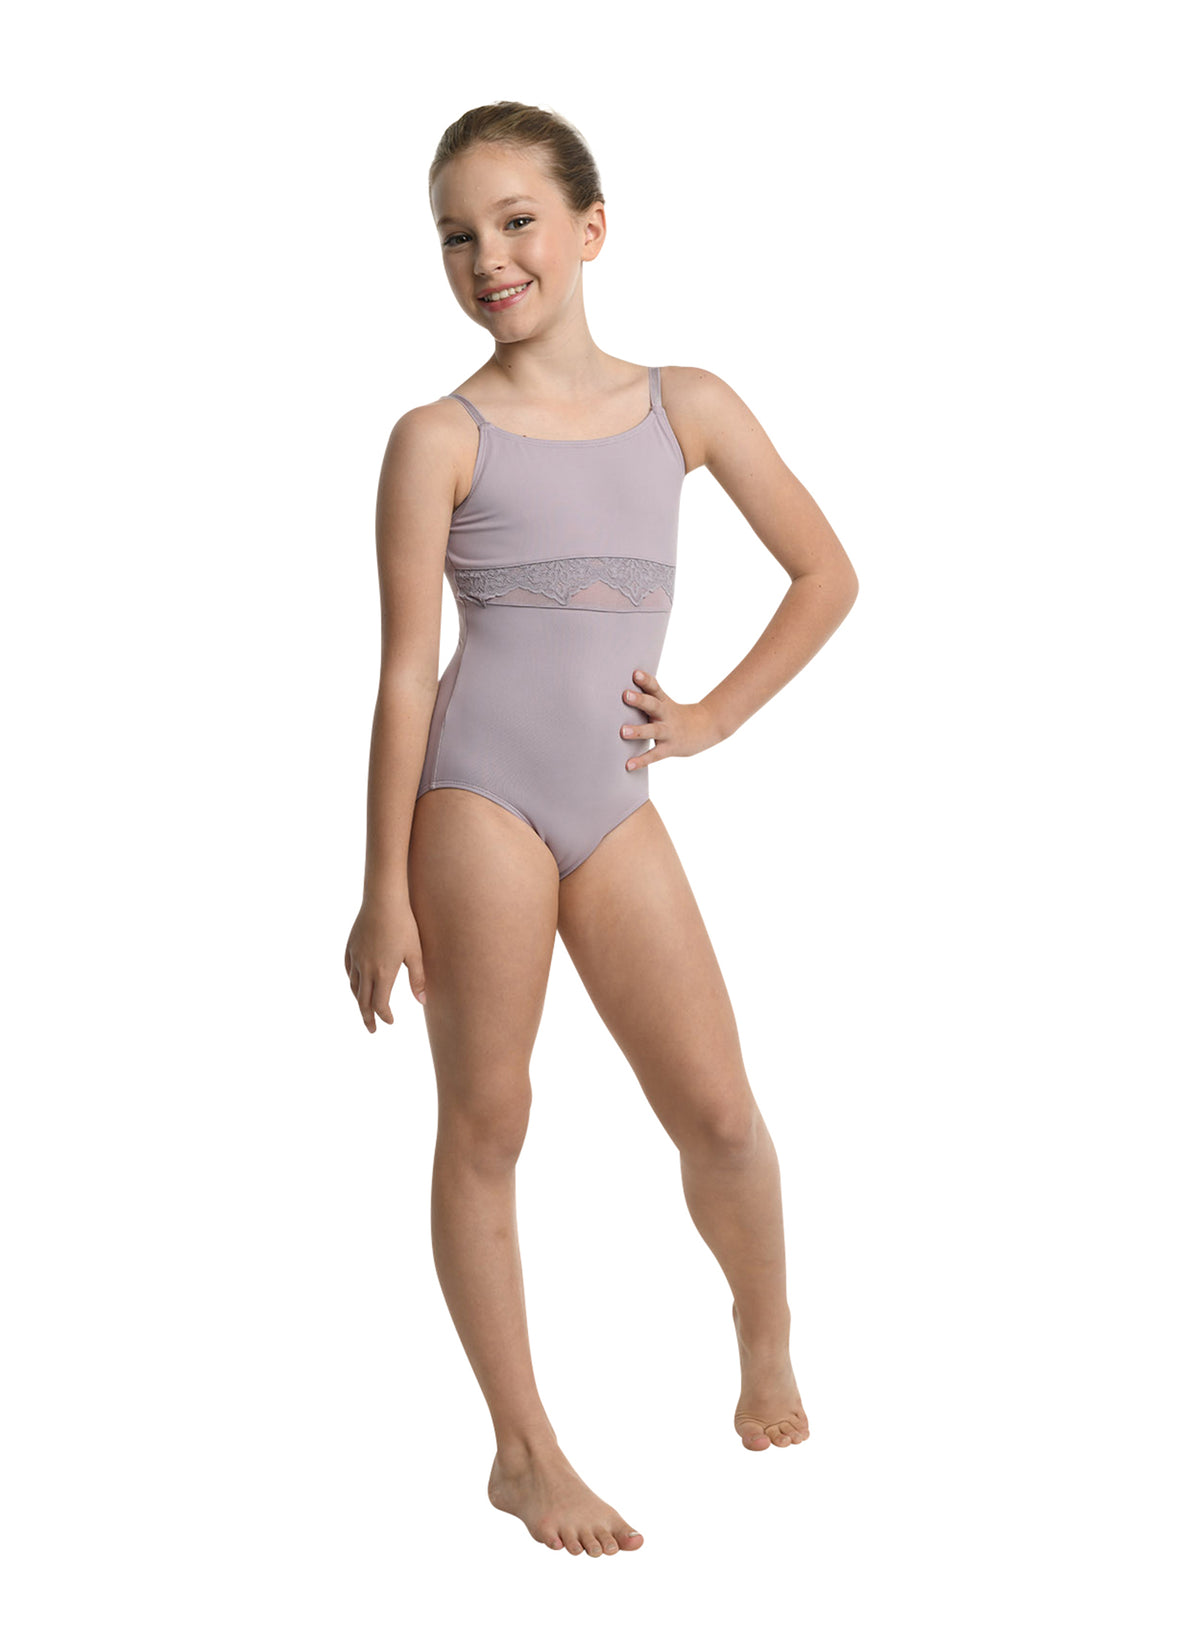 Tutu.com Girl's Classic Wide-Strap Camisole Leotard Pattern Size: 8-10  Uncut Sewing Pattern